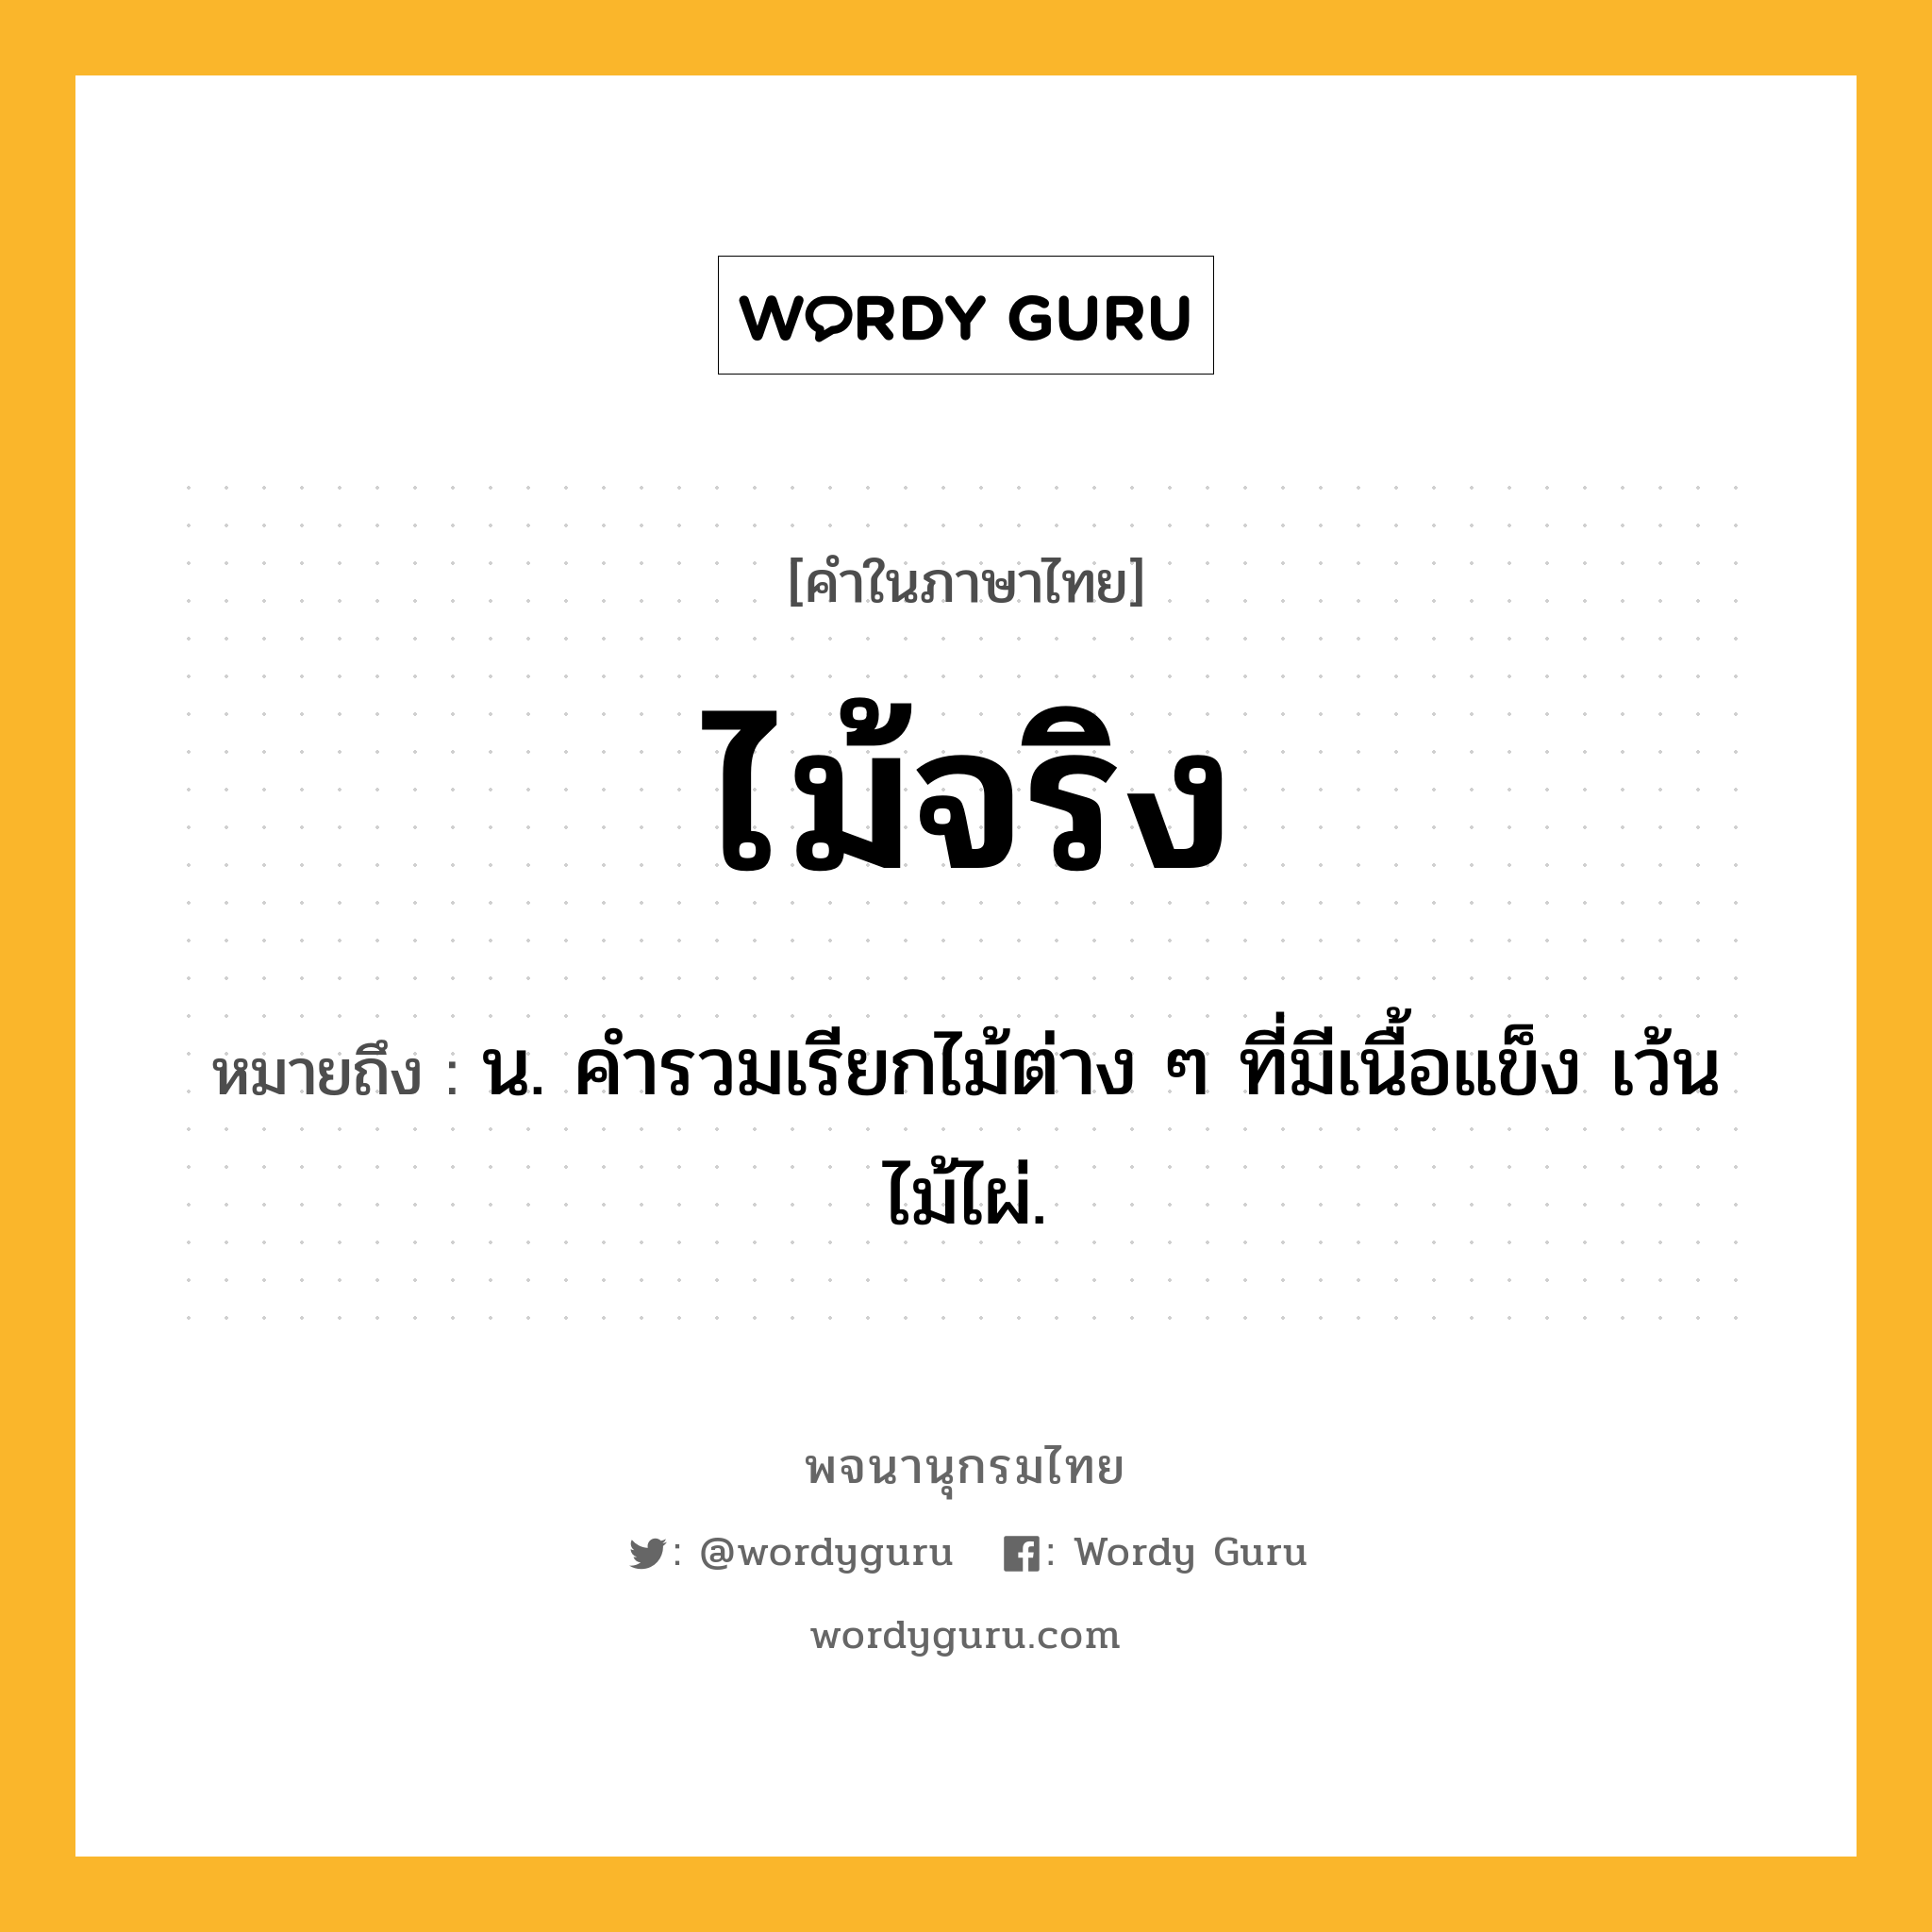 ไม้จริง หมายถึงอะไร?, คำในภาษาไทย ไม้จริง หมายถึง น. คำรวมเรียกไม้ต่าง ๆ ที่มีเนื้อแข็ง เว้นไม้ไผ่.